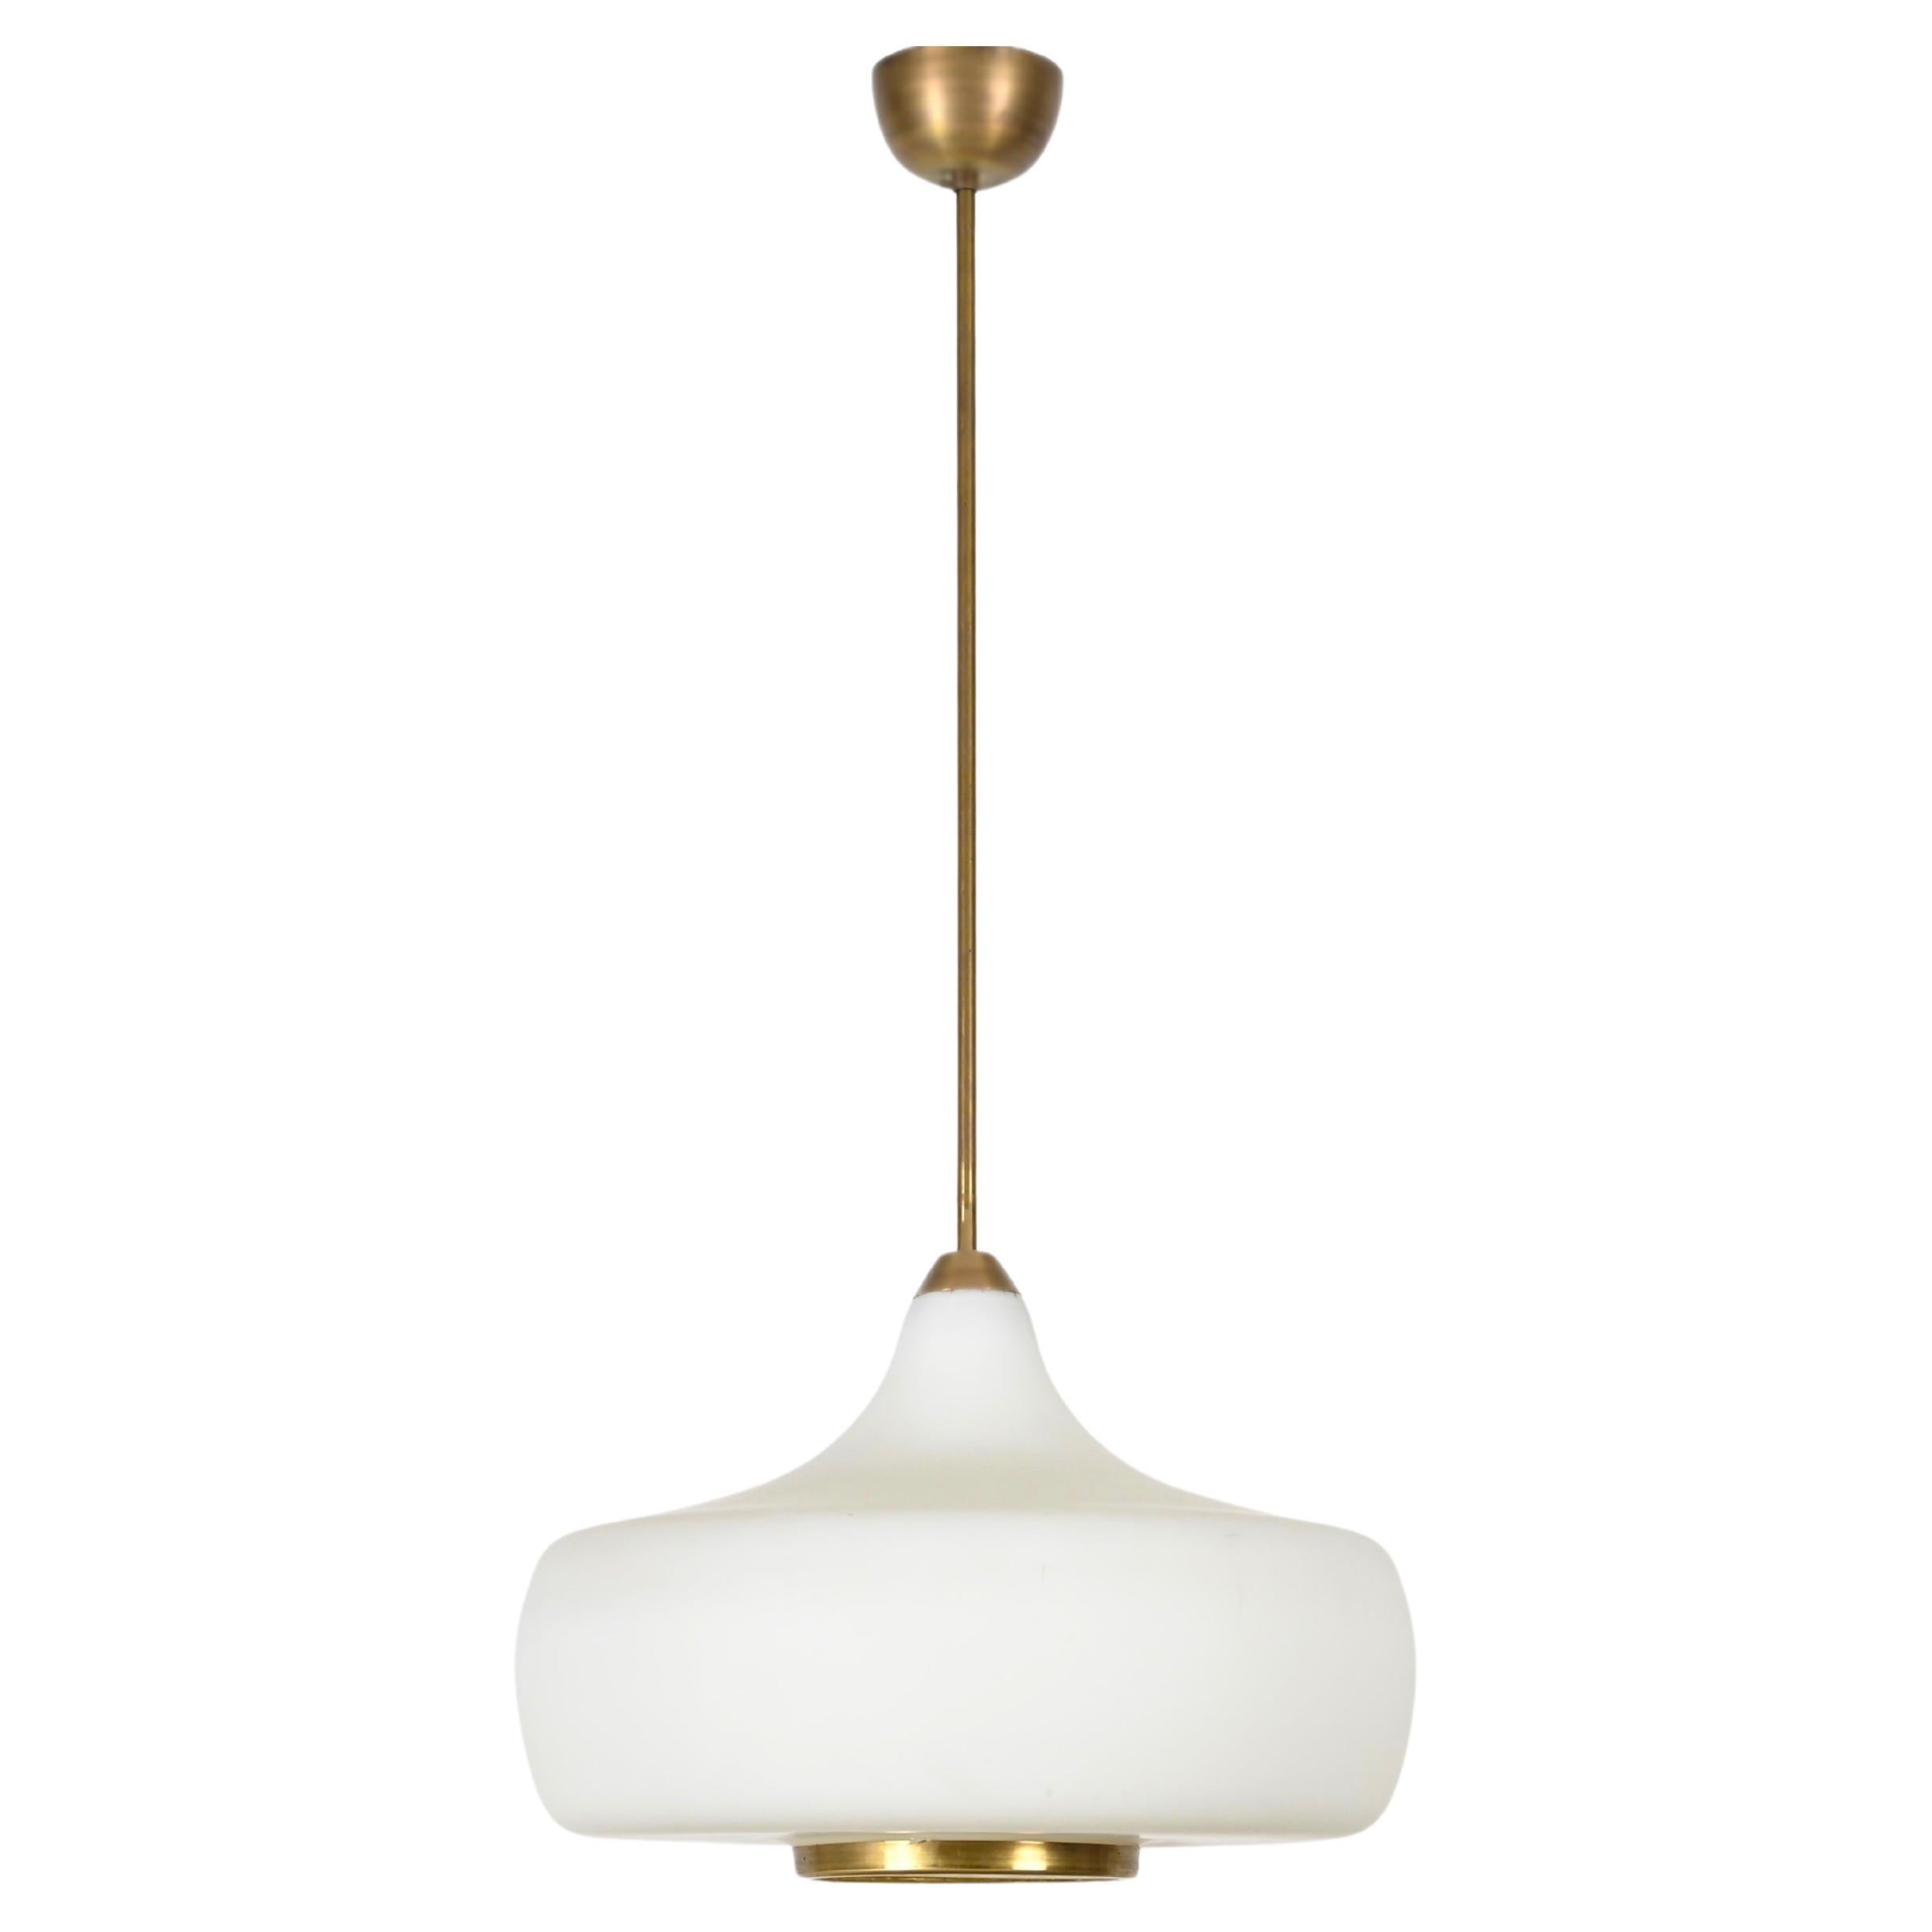 Stilnovo Opal Glass and Brass Chandelier Ceiling Lamp, Italian Lighting 1960s